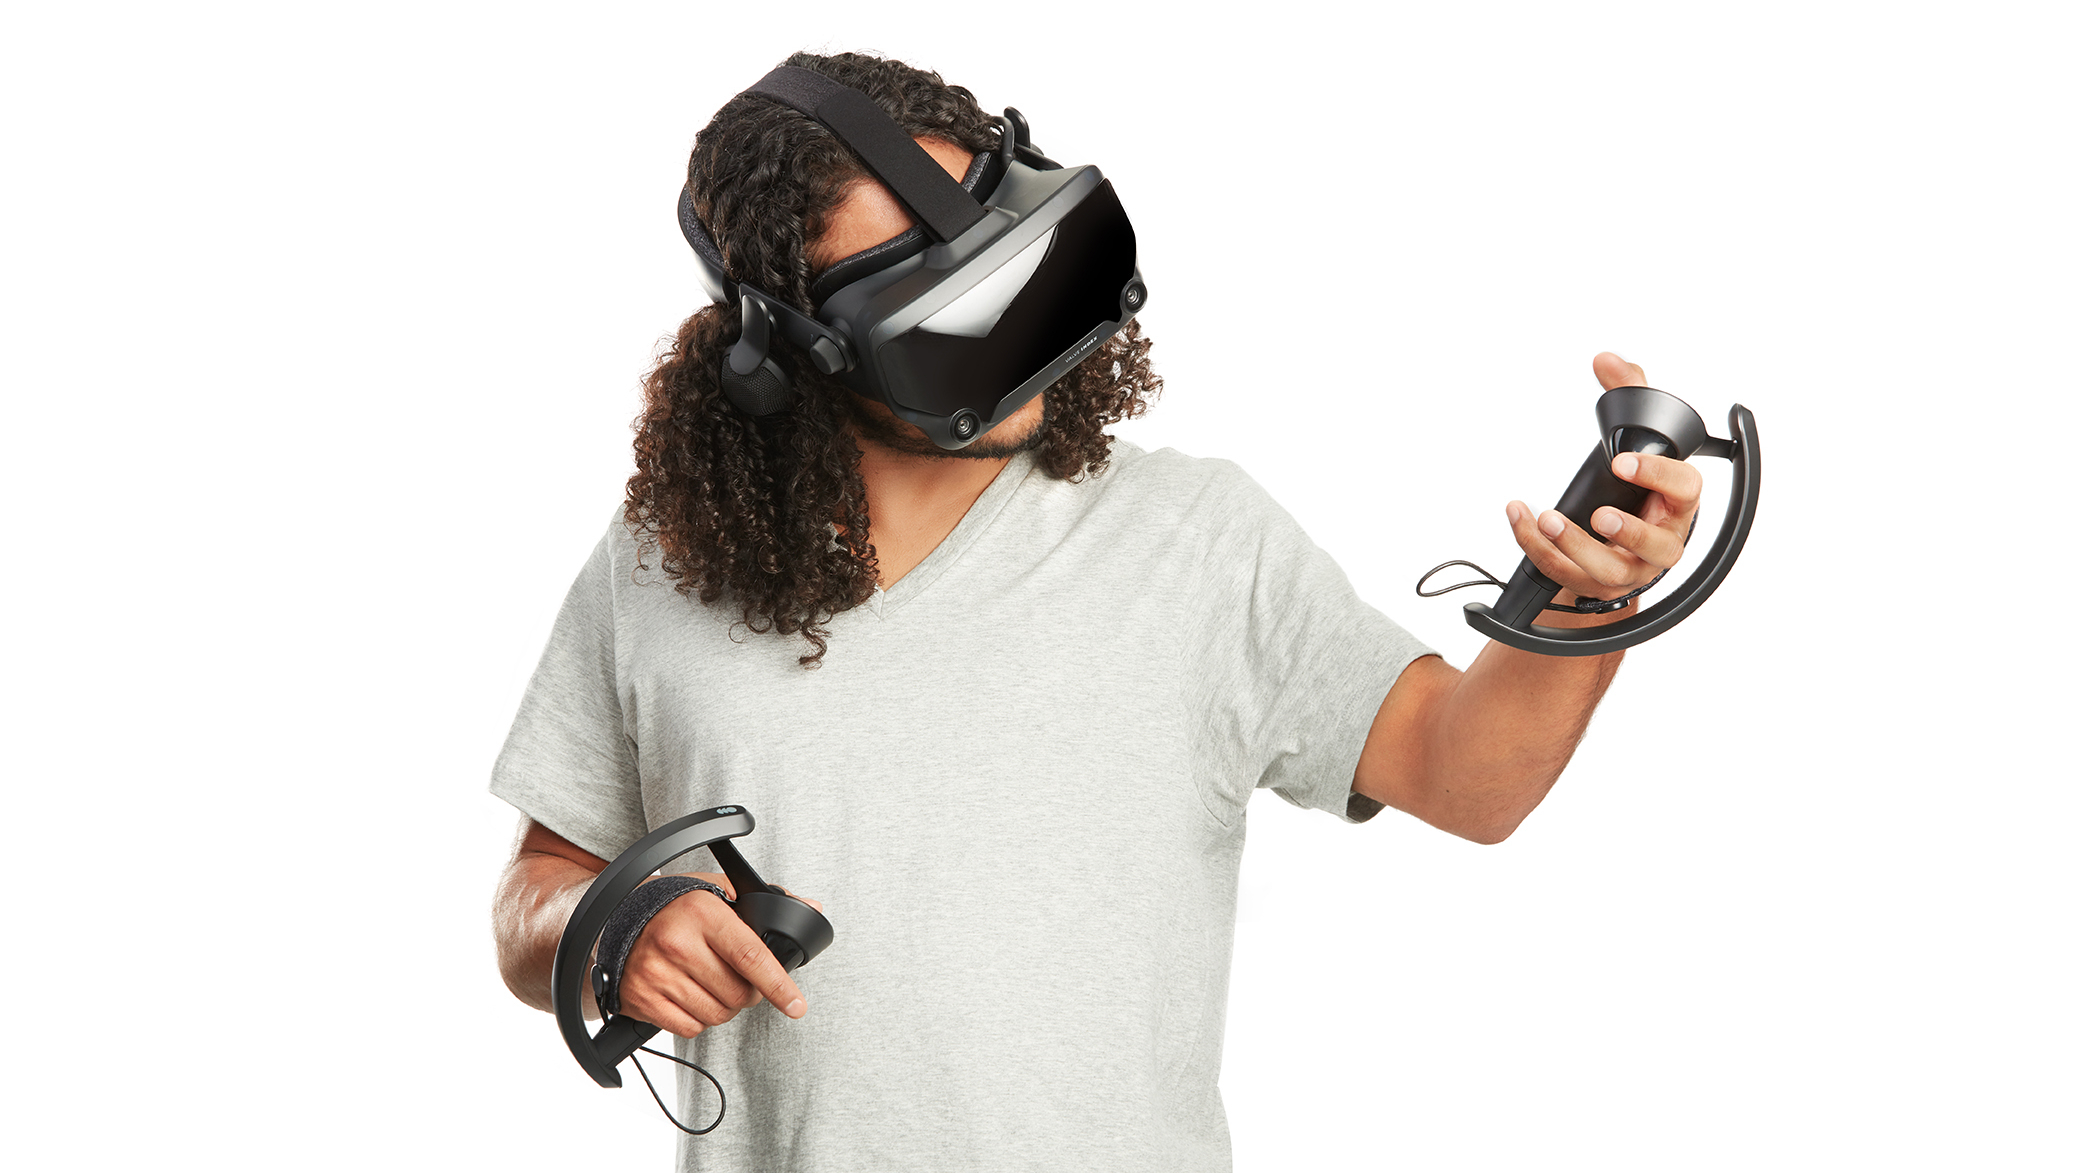 VR-шлем Index вернётся в продажу до выхода Half-Life: Alyx, но в сокращённых объёмах из-за вспышки коронавируса